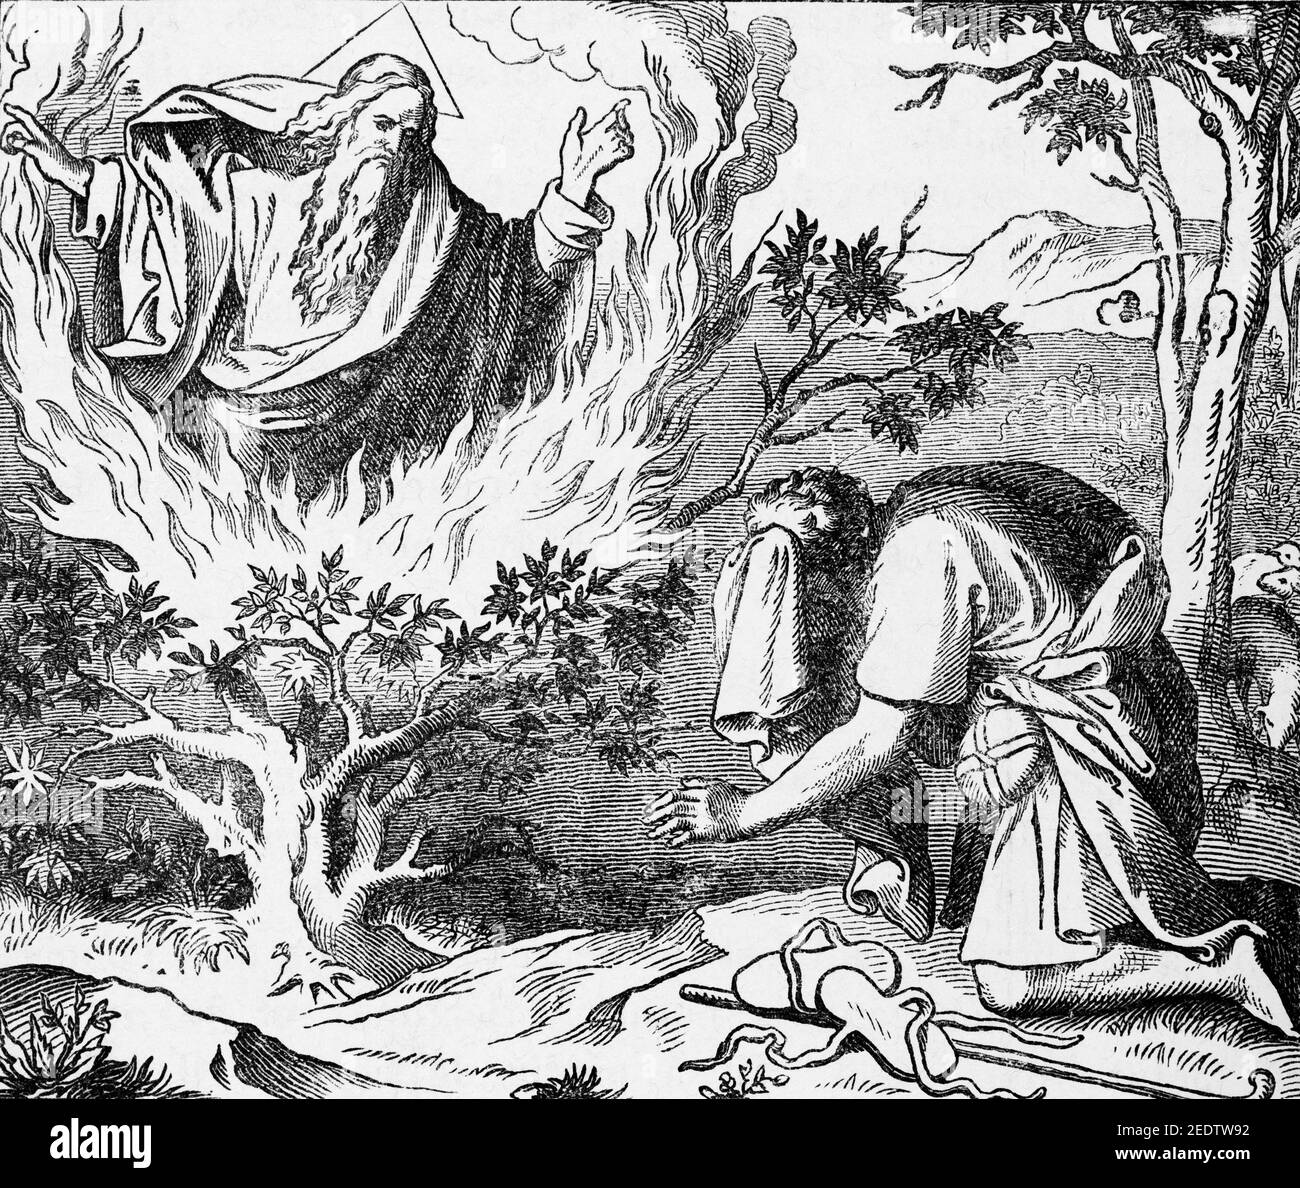 The Burning Bush, Old Testamnet, bible historique Histoire biblique de l’ancien Testament, Fribourg, 1891 Banque D'Images